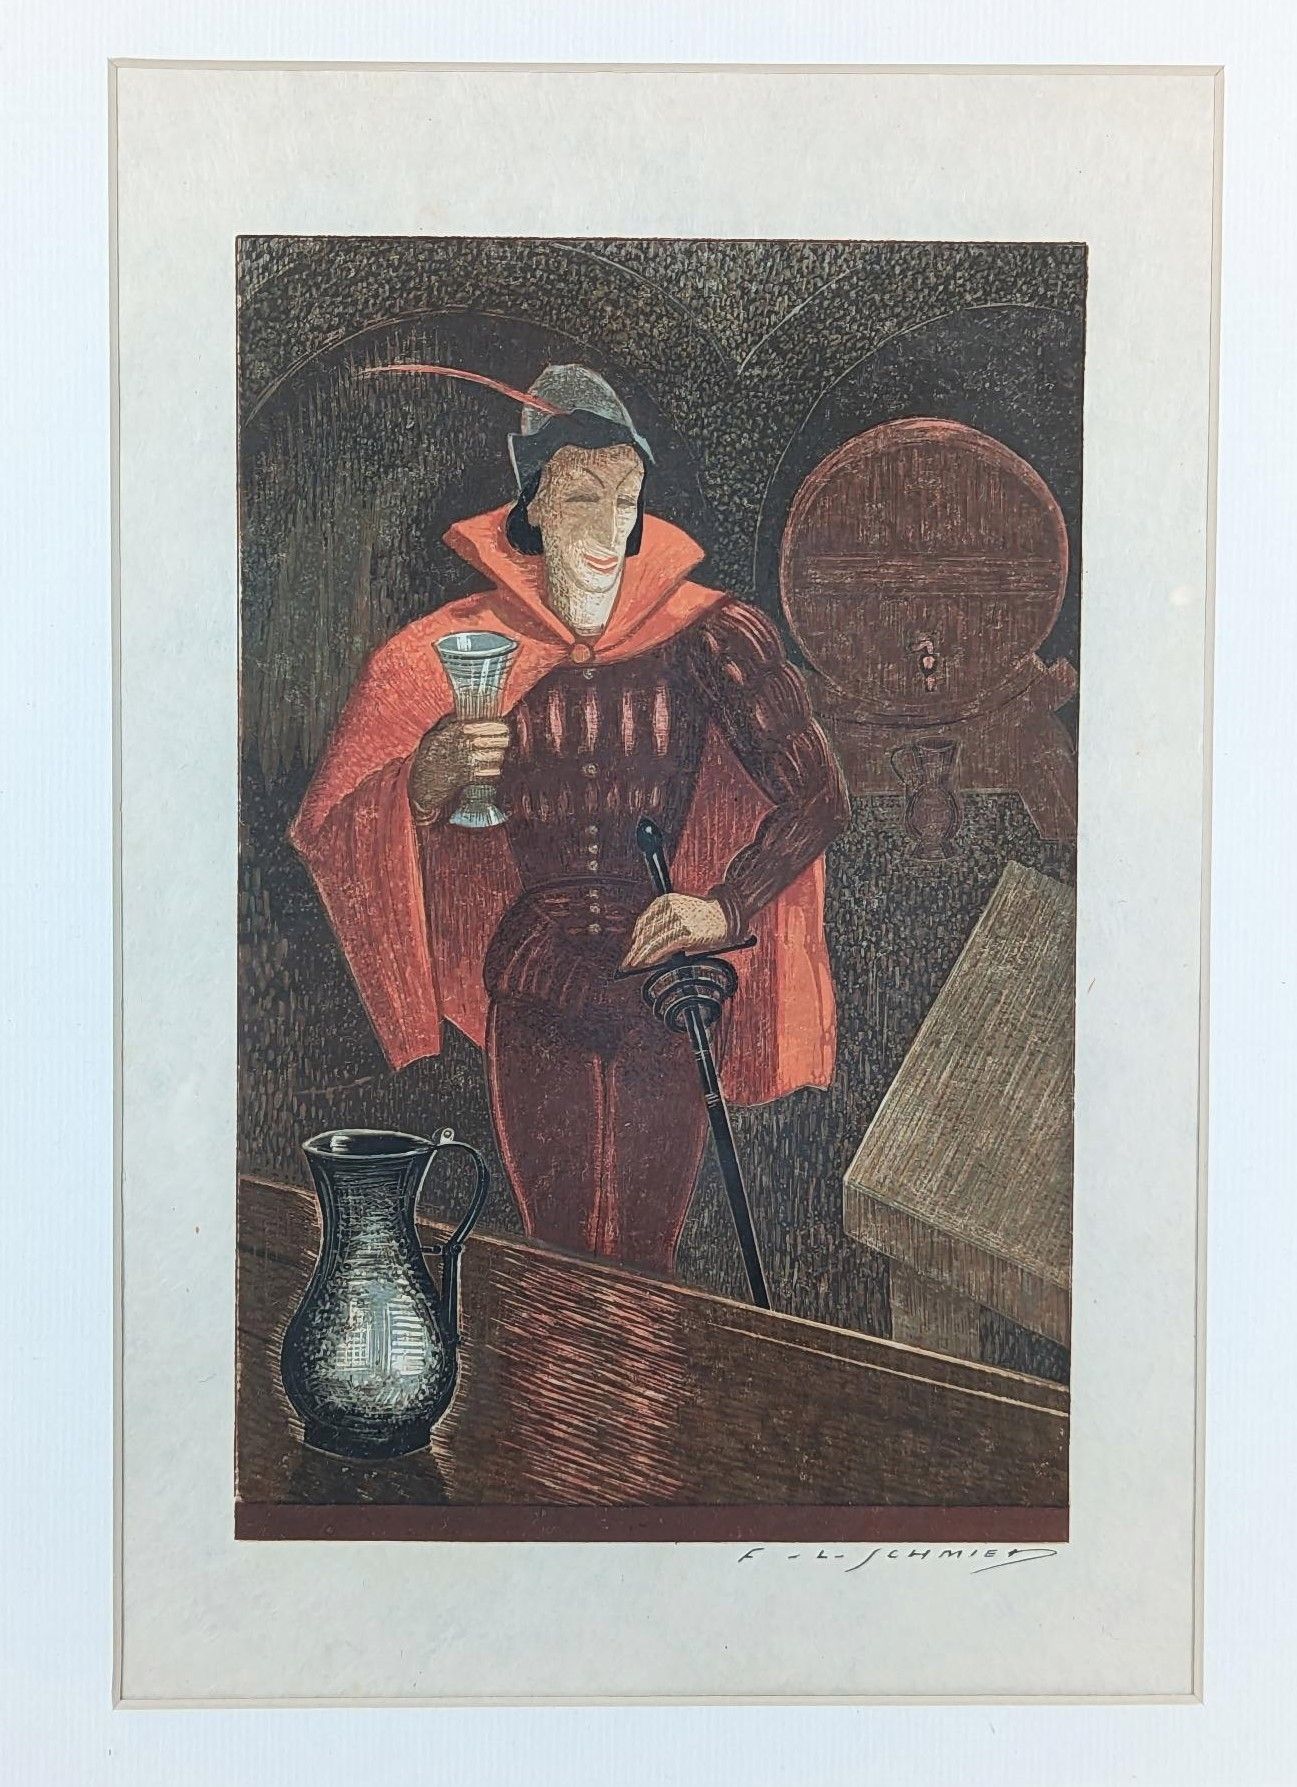 Null 弗朗索瓦-路易-施密德(1873-1941)
歌德《浮士德》插图
日本纸上的彩色雕版画
29 x 19 厘米